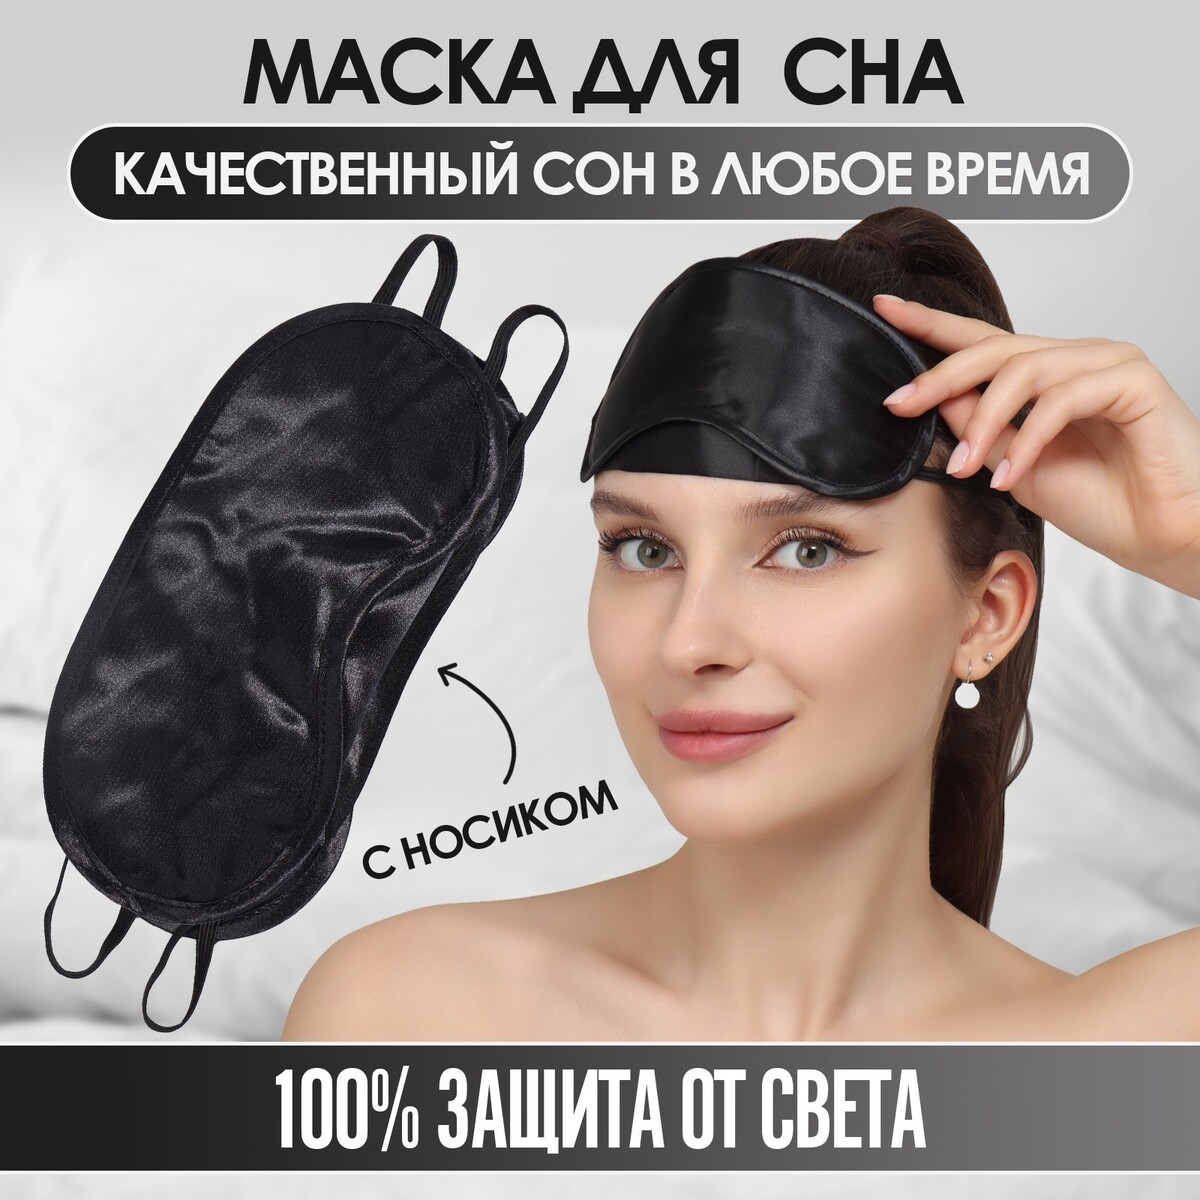 Маска для сна, сатиновая, с носиком, двойная резинка, 19 × 8,5 см, цвет черный маска для сна сатиновая двойная резинка 19 × 8 5 см